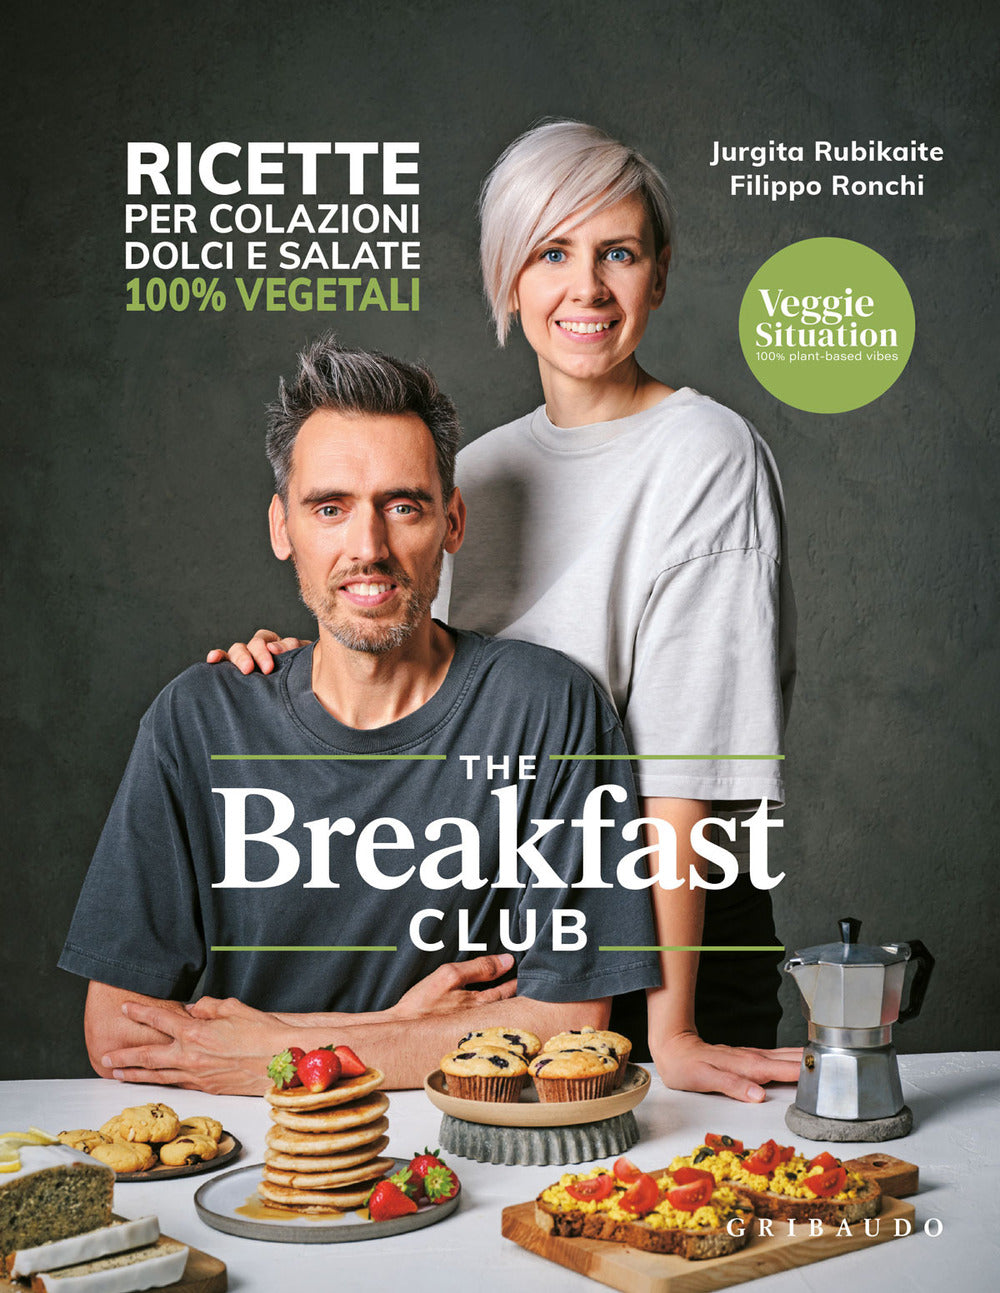 The breakfast club. Ricette per colazioni dolci e salate 100% vegetali.